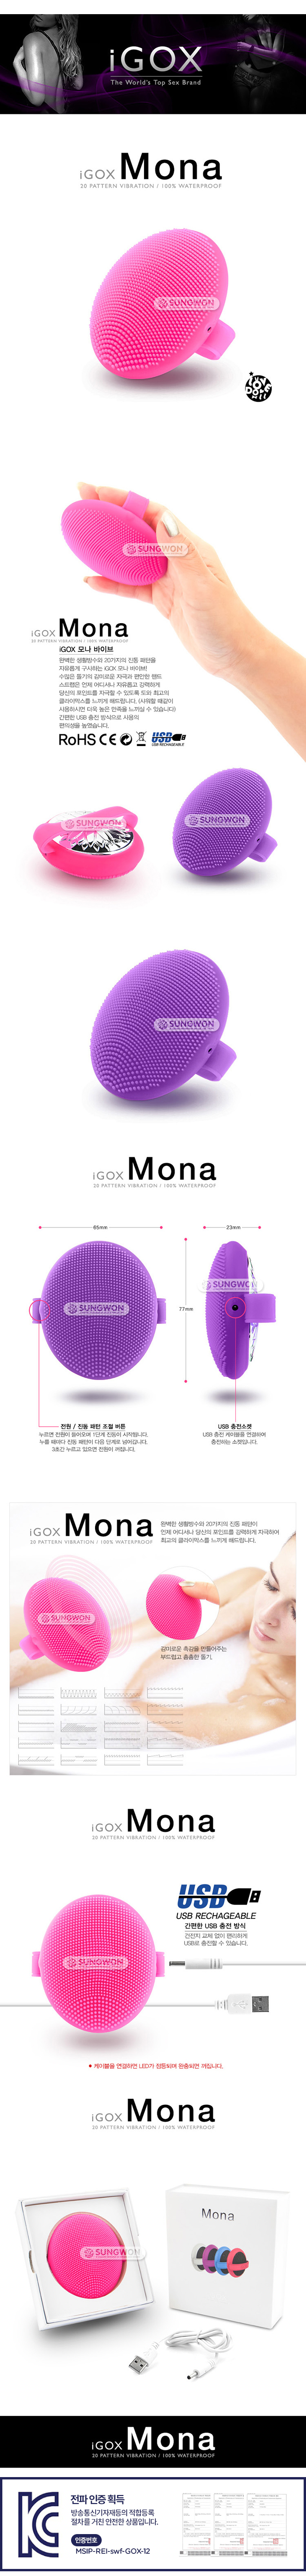 [20단 진동] iGOX 모나 바이브(Mona) - USB 충전식